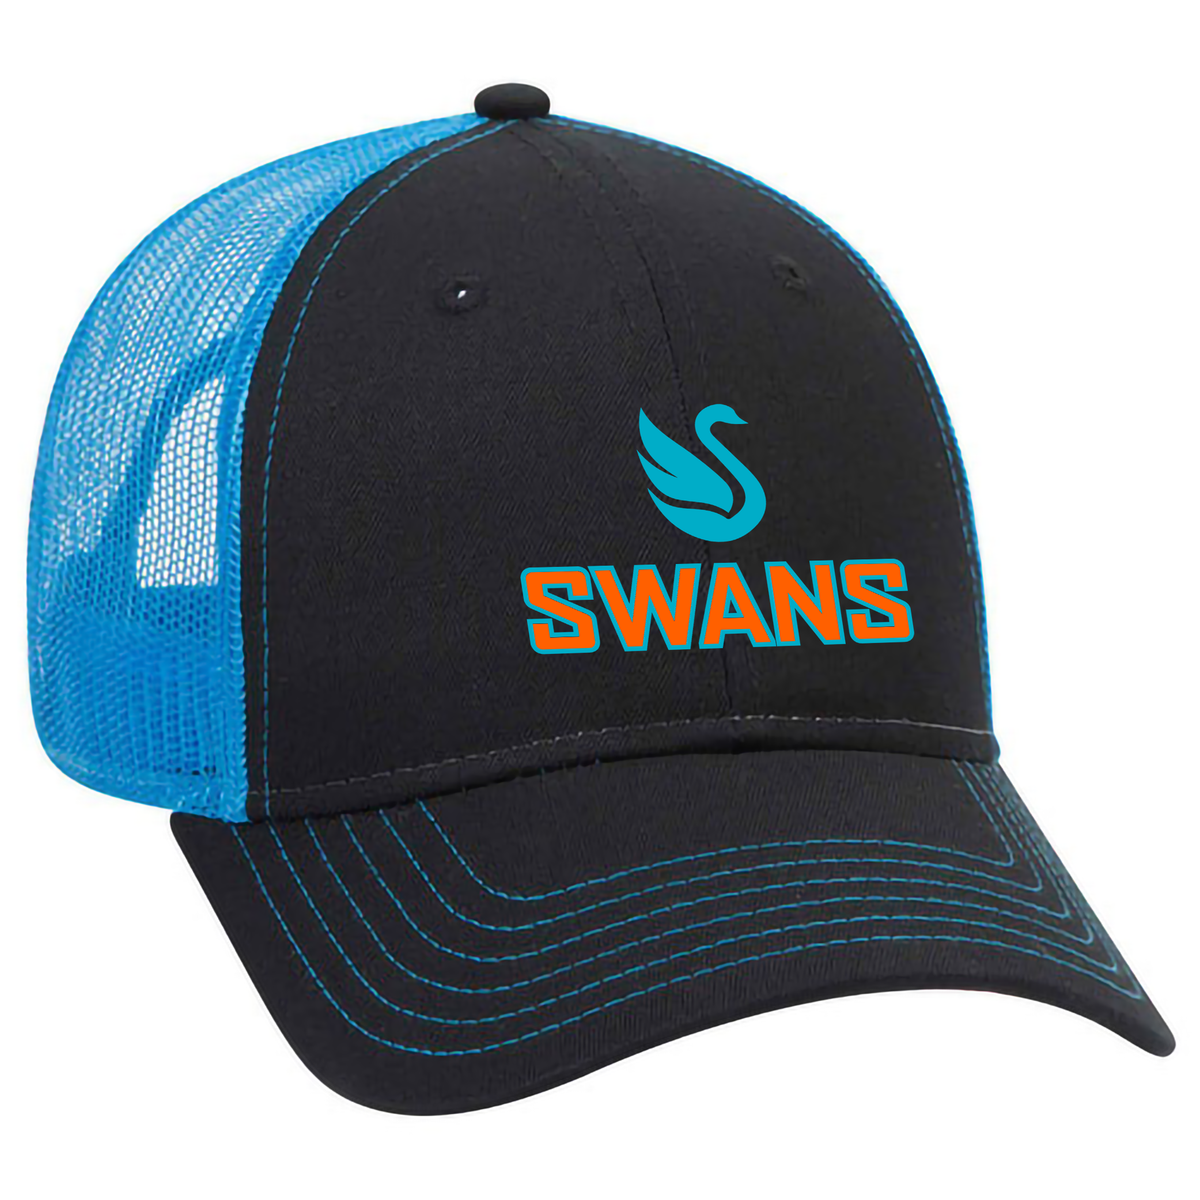 Swans Lacrosse Low Profile Mesh Back Trucker